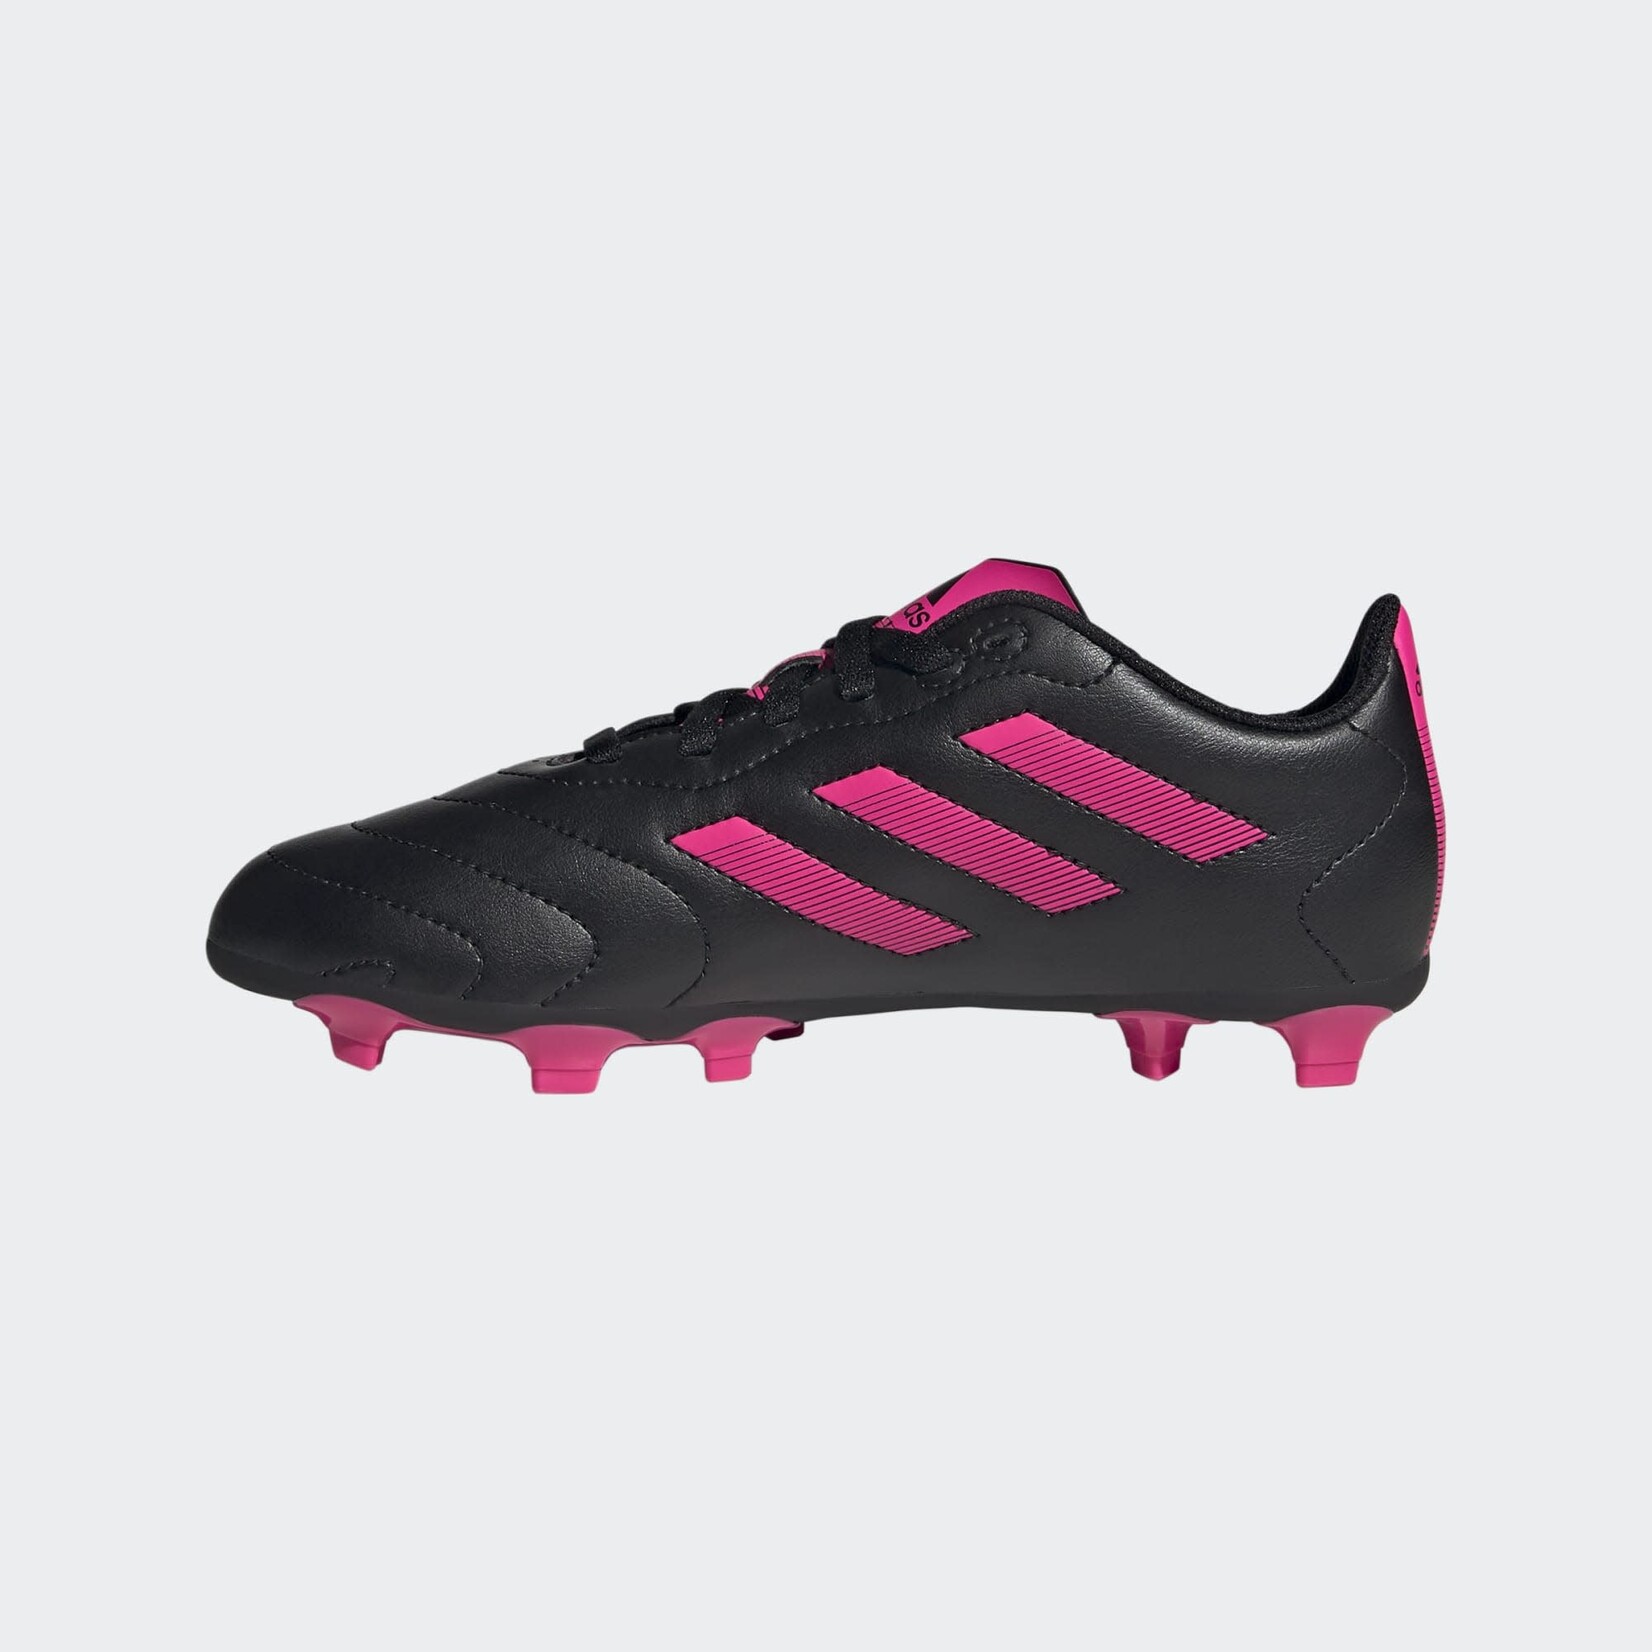 Adidas Adidas Soccer Shoes, Goletto VIII FG, Junior